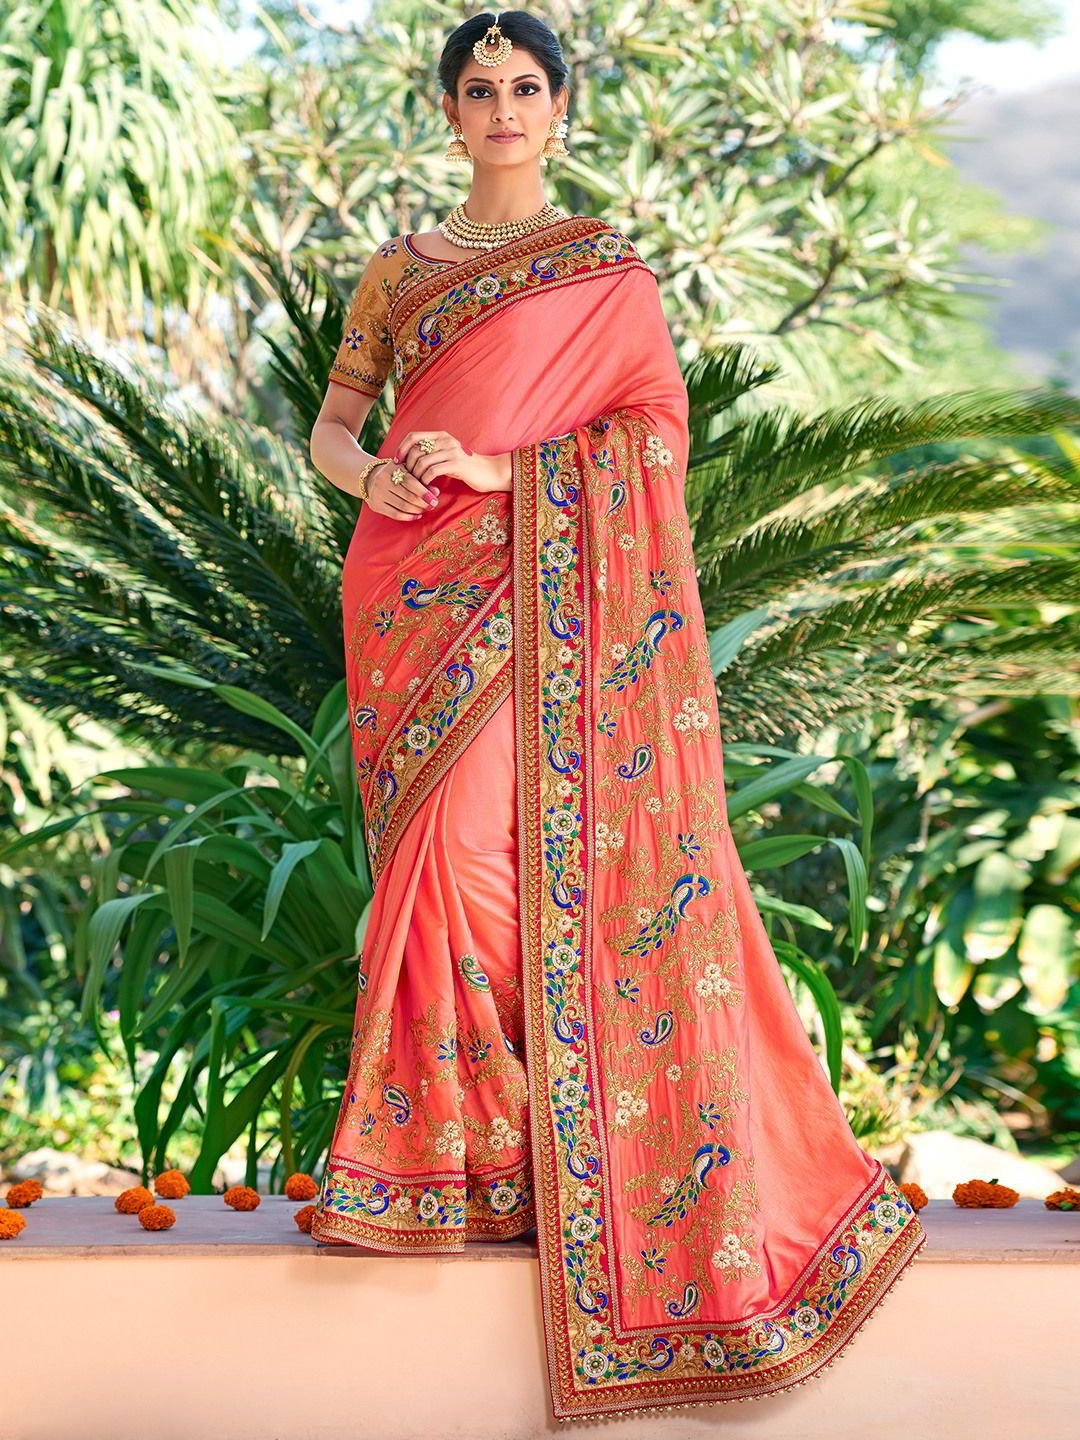 Женское сари индия. Национальный костюм Индии Сари. Хиндустанцы в национальных костюмах. Сари (женская одежда в Индии). Индия женщины в Сари.